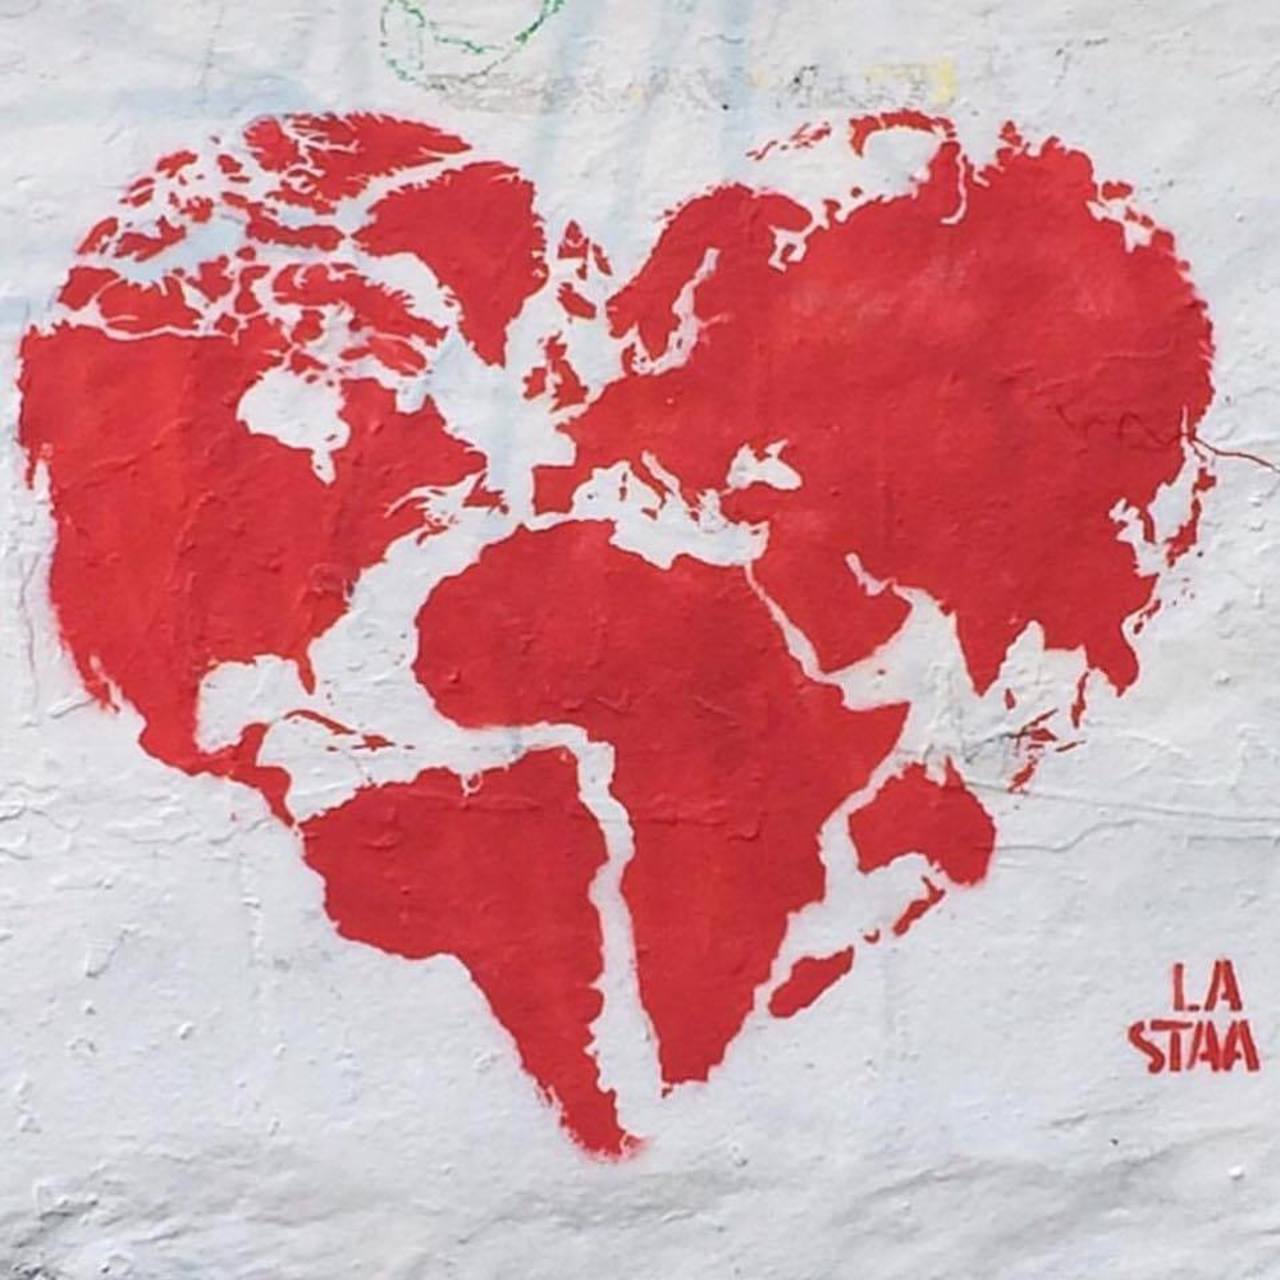 We need #love in this #world! – #streetart – Be ▲rtist – Be ▲rt Magazine https://beartistbeart.com/2016/08/10/we-need-love-in-this-world-streetart/?utm_campaign=crowdfire&utm_content=crowdfire&utm_medium=social&utm_source=twitter https://t.co/eFYRvsFb37